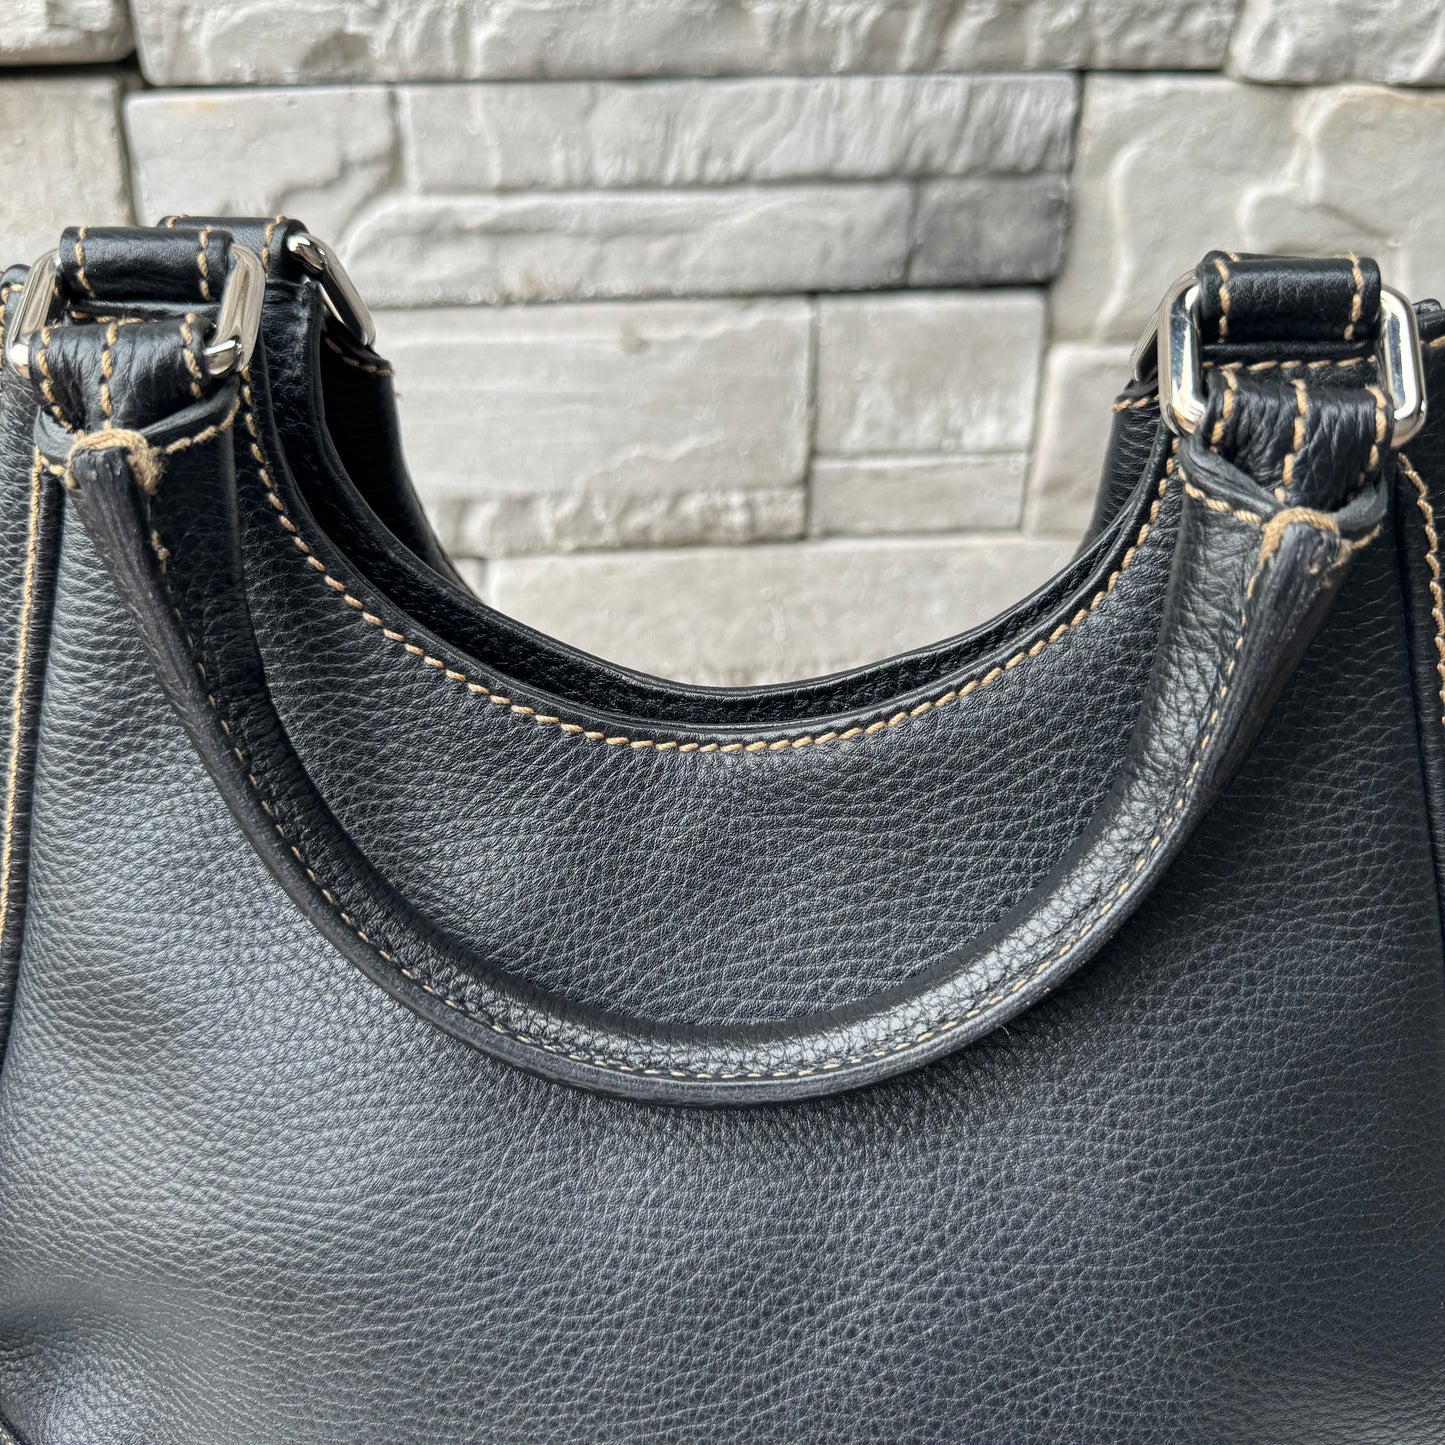 Chanel LAX Leather Tassel Shoulder Bag